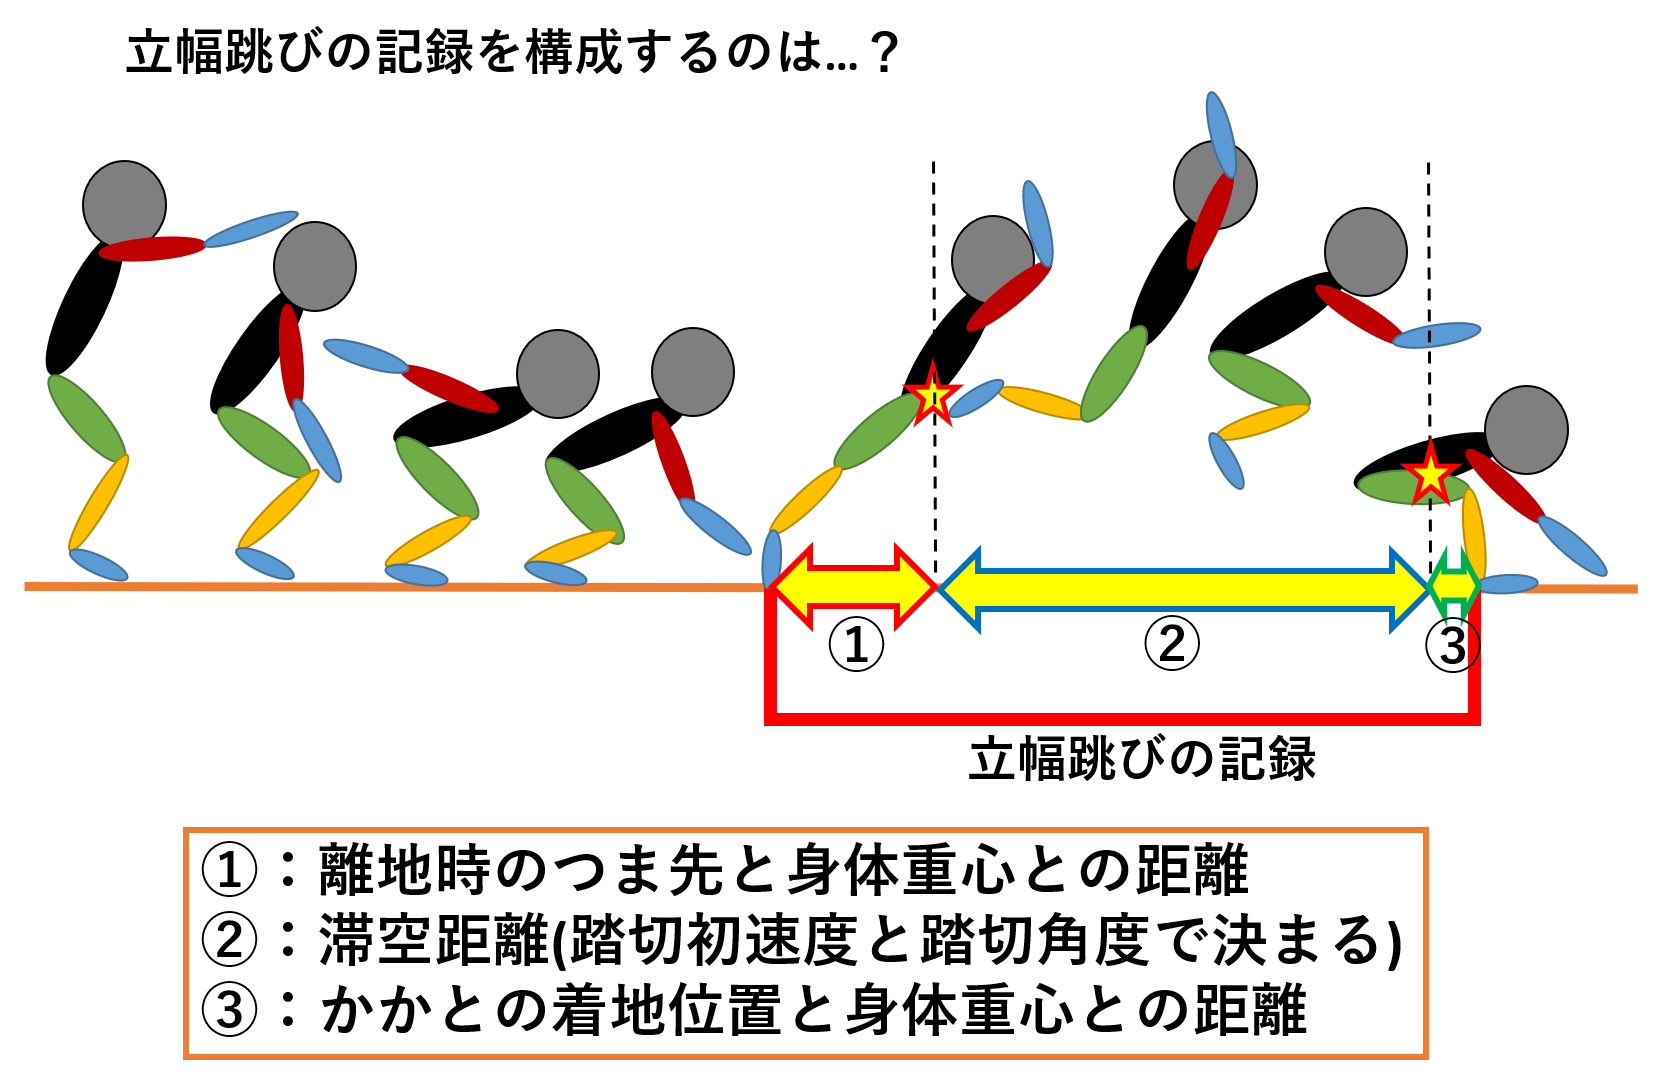 立幅跳びのバイオメカニクス 立ち幅跳のコツ 陸上競技の理論と実践 Sprint Conditioning